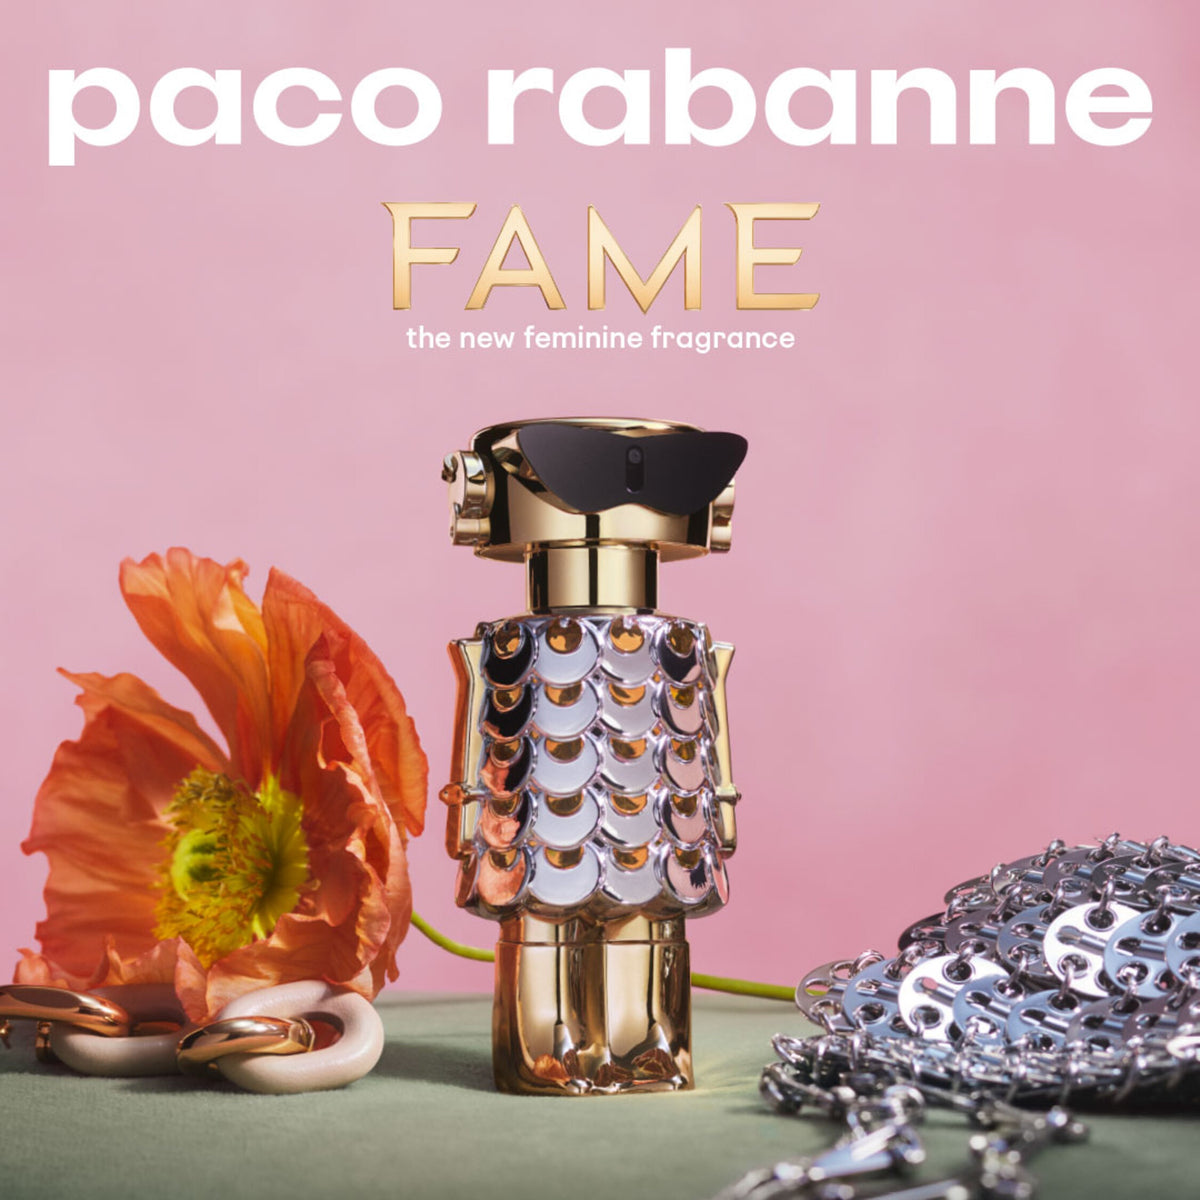 Paco Rabanne Fame For Women - Eau De Parfum - 80ml